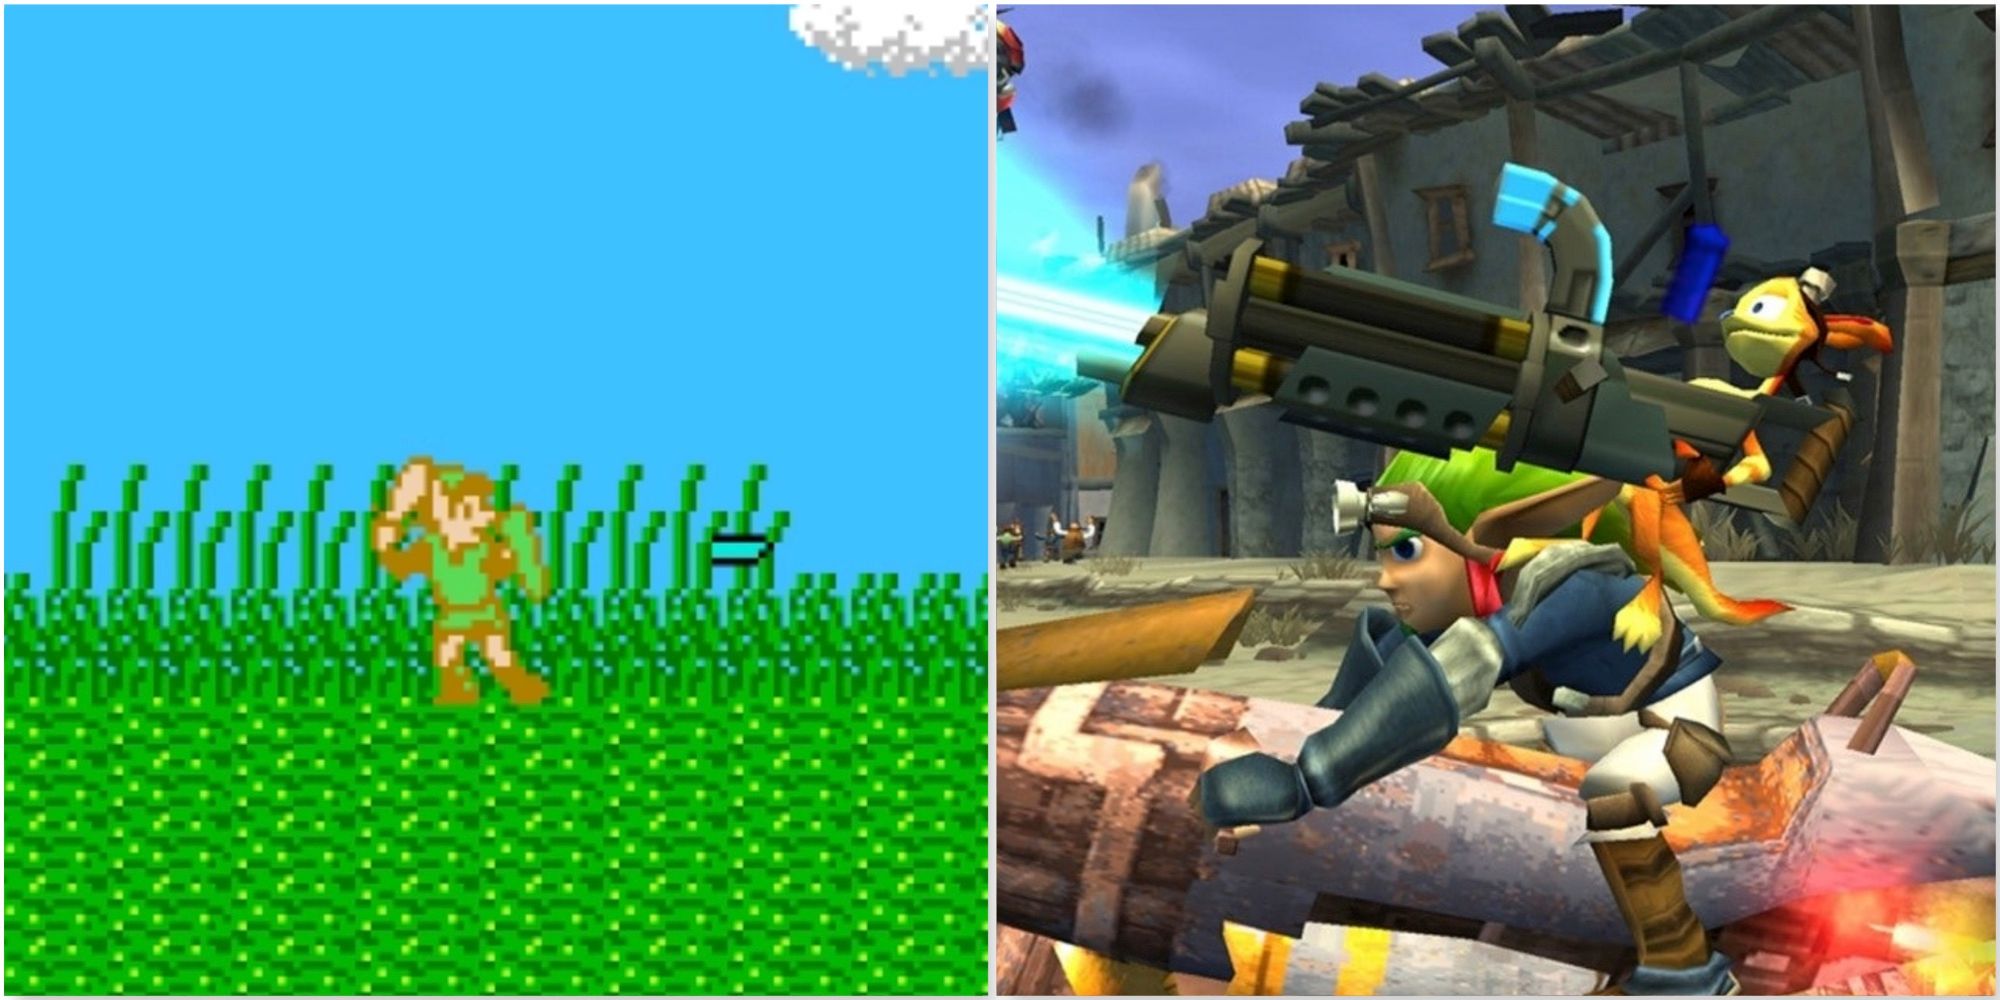 Fighting enemies in Zelda 2 The Adventure Of Link and Driving around in Jak 2